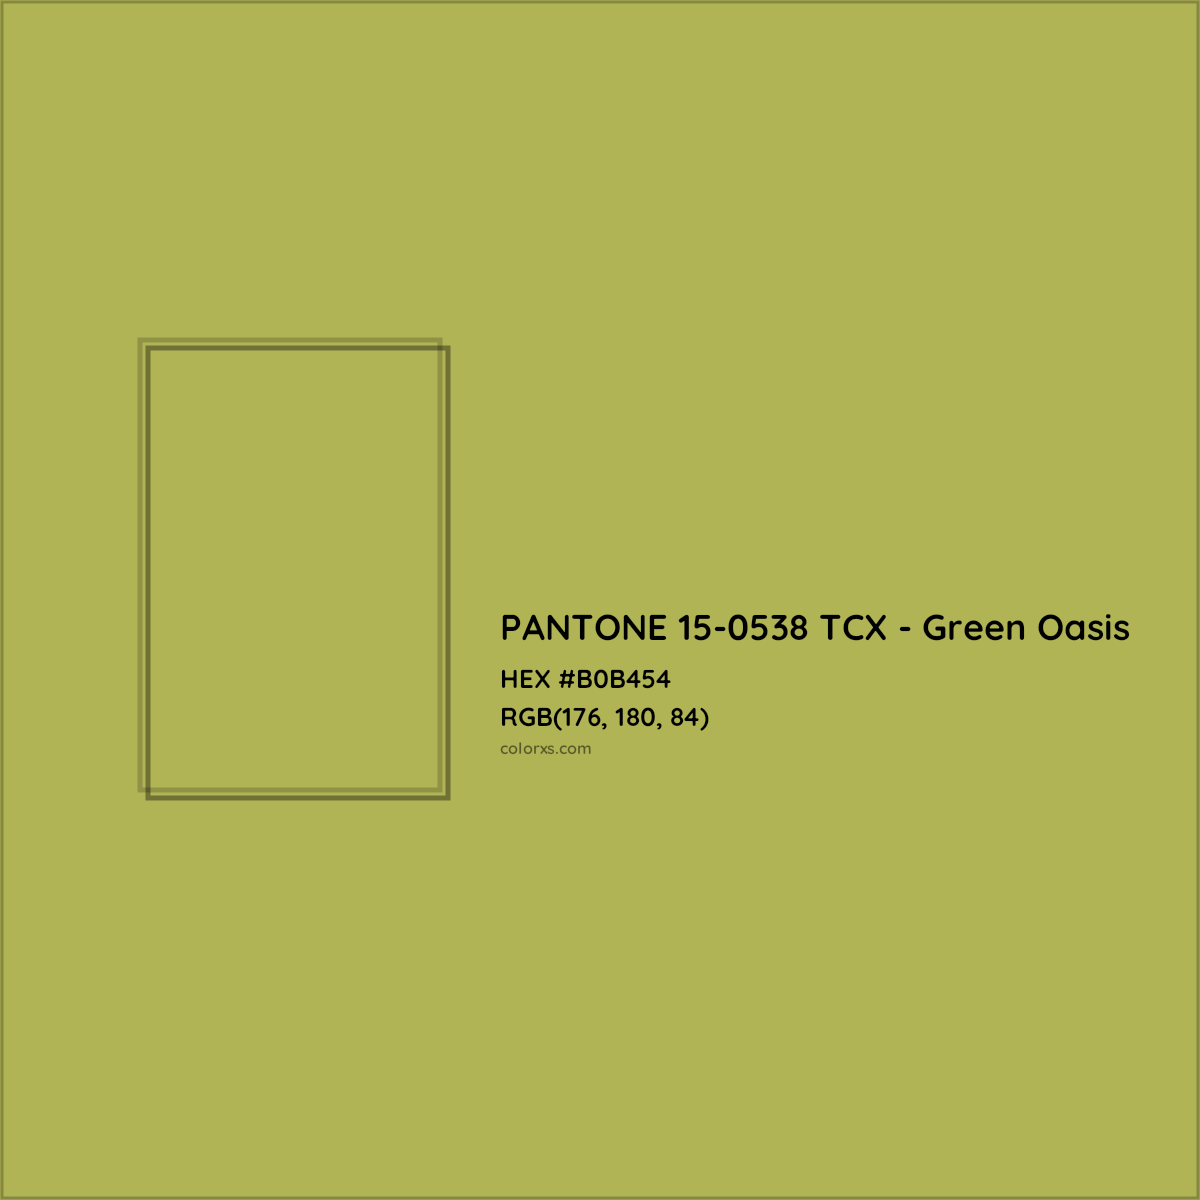 HEX #B0B454 PANTONE 15-0538 TCX - Green Oasis CMS Pantone TCX - Color Code